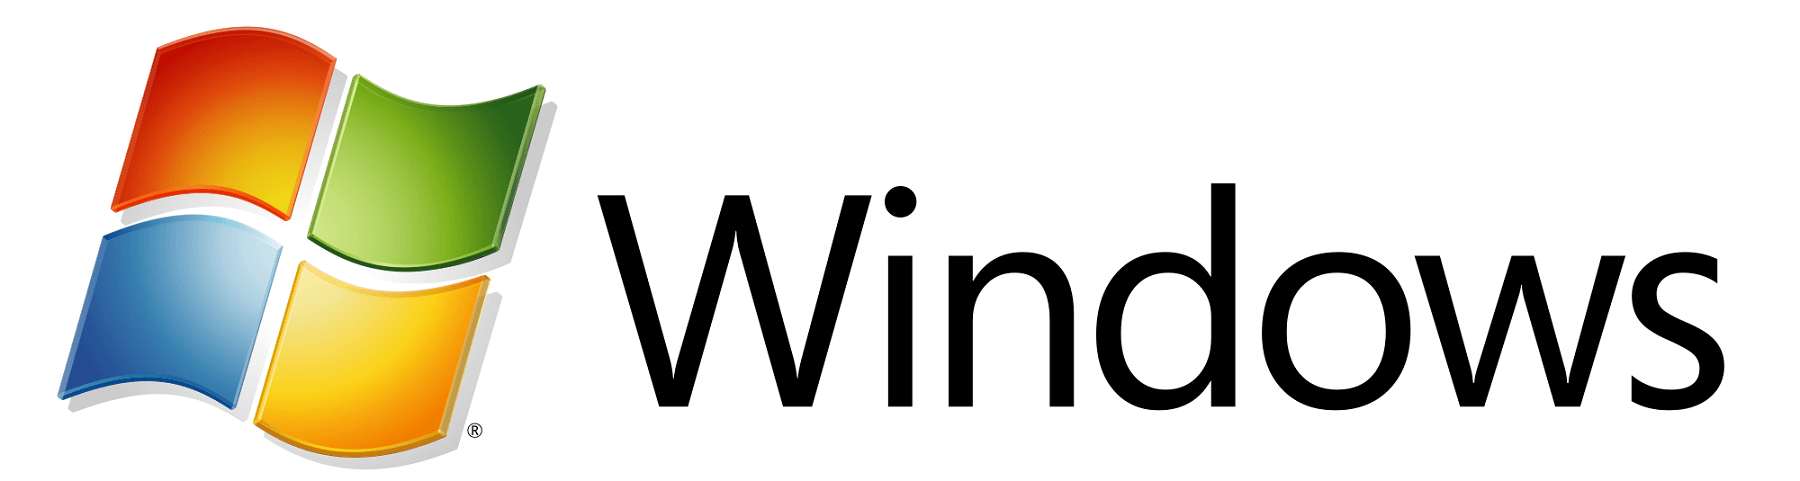 Microsoft Windows Logo - Microsoft Windows Logo PNG Transparent Microsoft Windows Logo.PNG